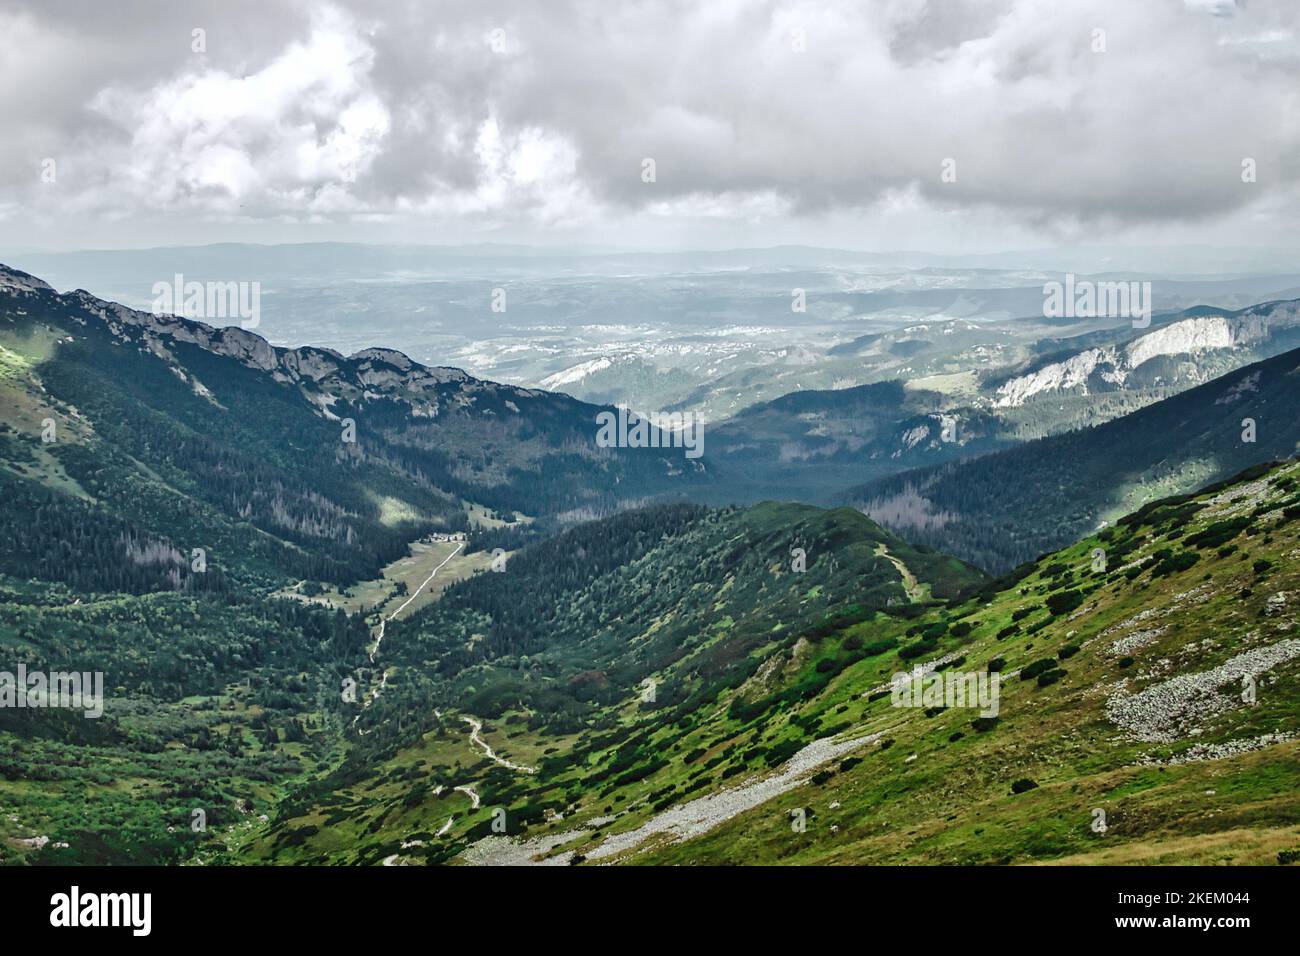 Landschaftlich schöner Blick über das Tal mit immergrünen Wäldern, felsigen Klippen, Wanderwegen und Zakopane Stadt in der Ferne in Polen vom Tatra Nationalpark Stockfoto